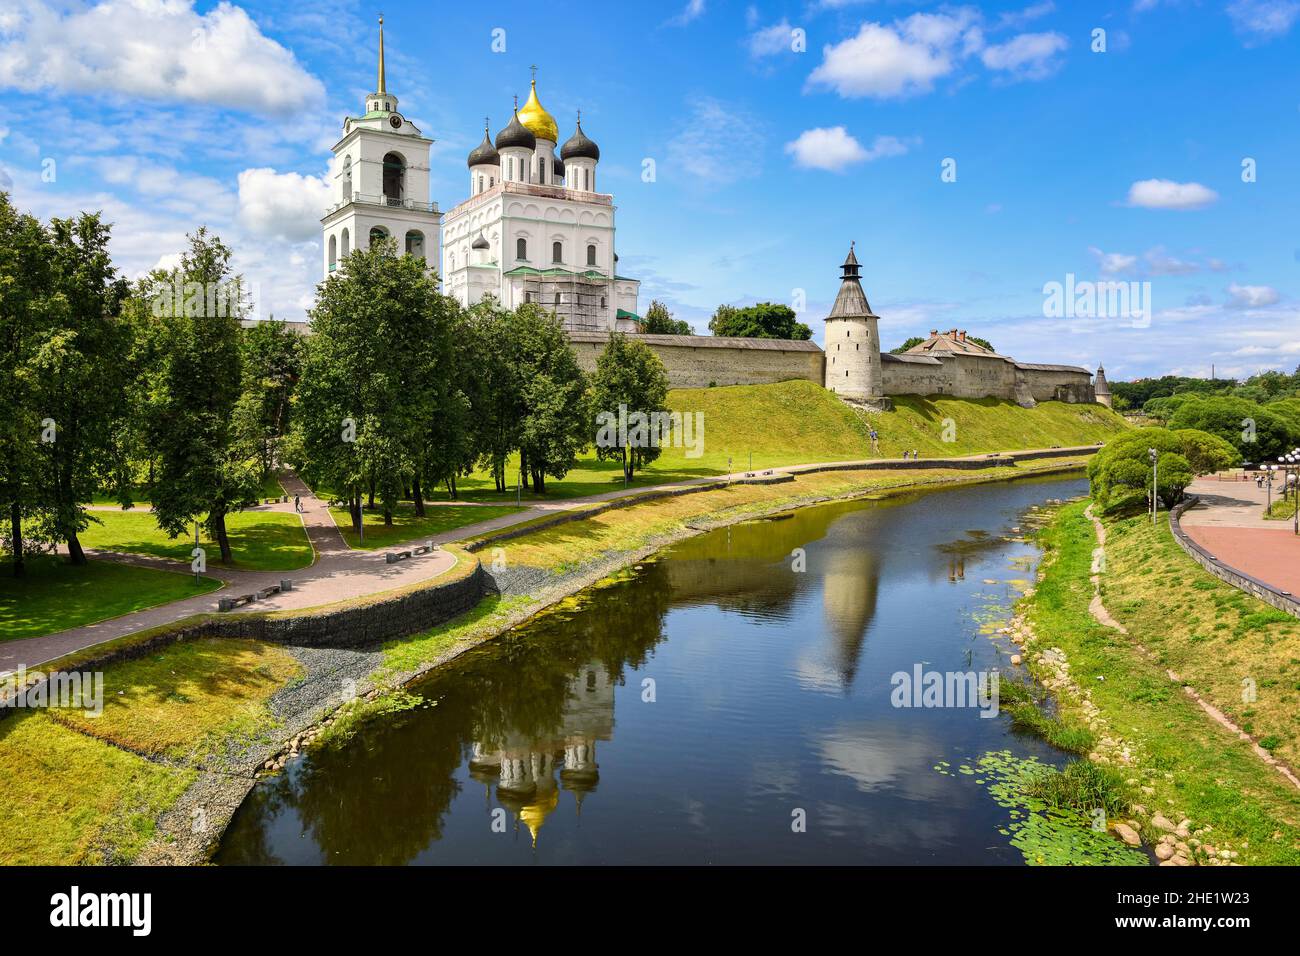 Historical Pskov Kremlin on Velikaya river in the Pskov city, Russia Stock Photo